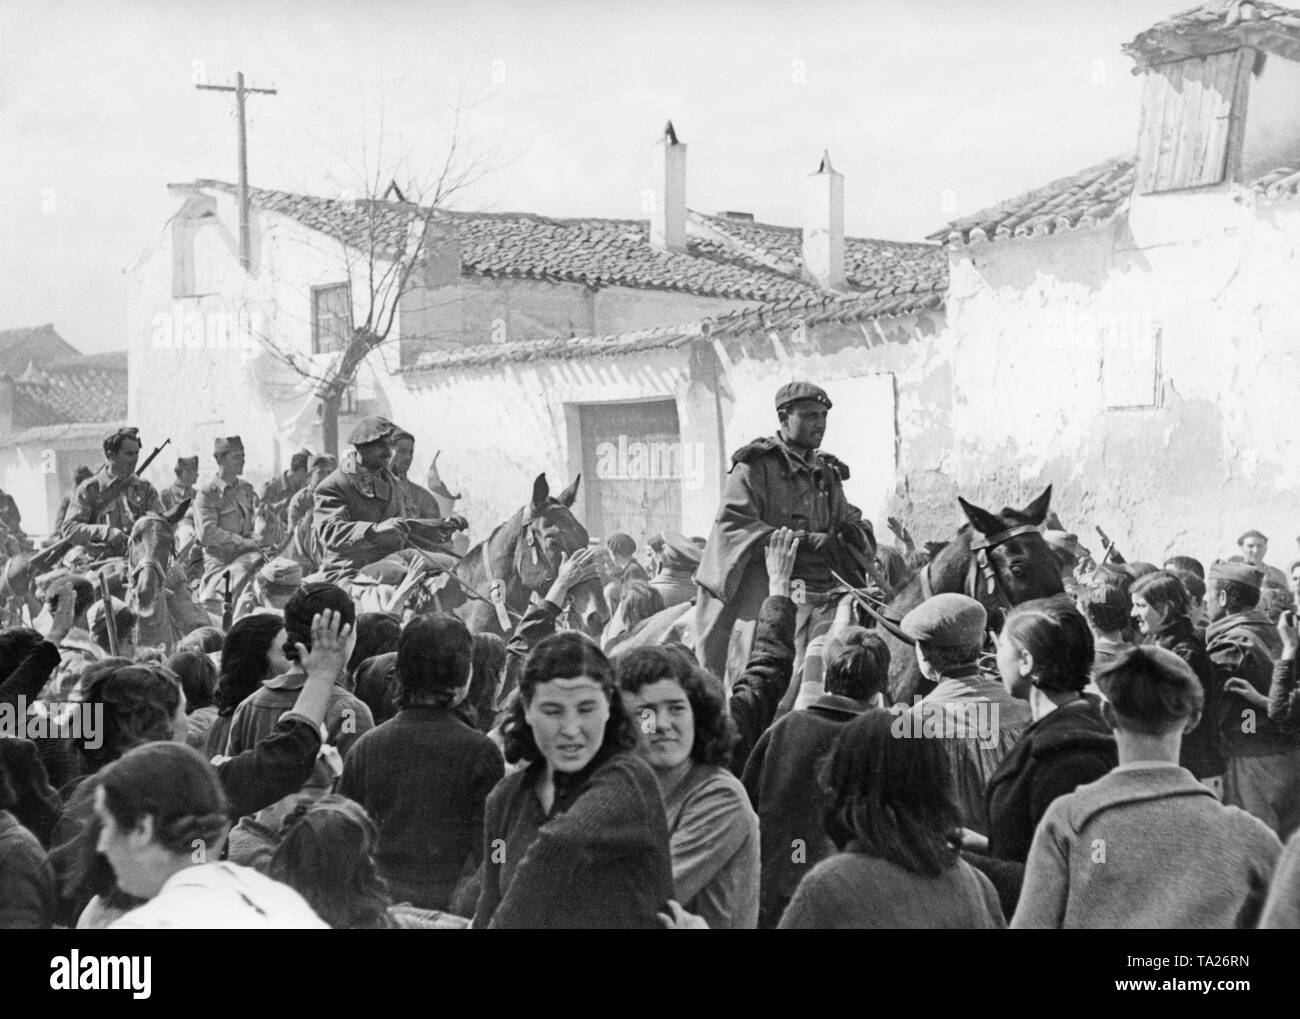 De nationalité espagnole, unité de cavalerie de la Légion étrangère marocaine (Fuerzas Regulares Indigenas) dans le village de Templique près de Tolède le 29 mars 1939. Les unités blindées n'avait été tirée à travers le village avant. Au premier plan, les habitants donnent le salut fasciste. Banque D'Images